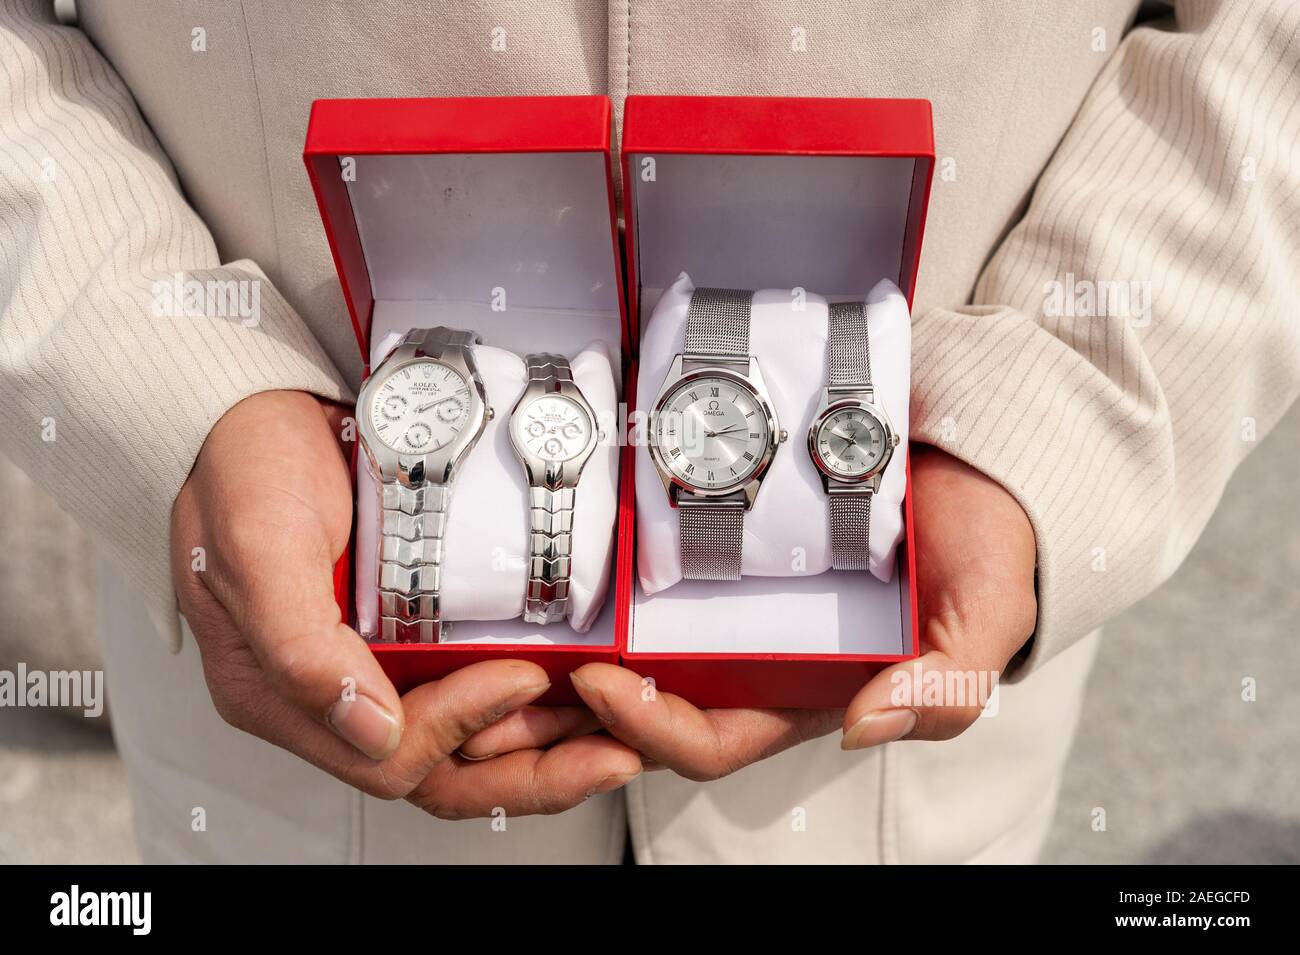 Uomo di vendita falsi Rolex e Omega orologi sulla strada, Shanghai, Cina Foto Stock